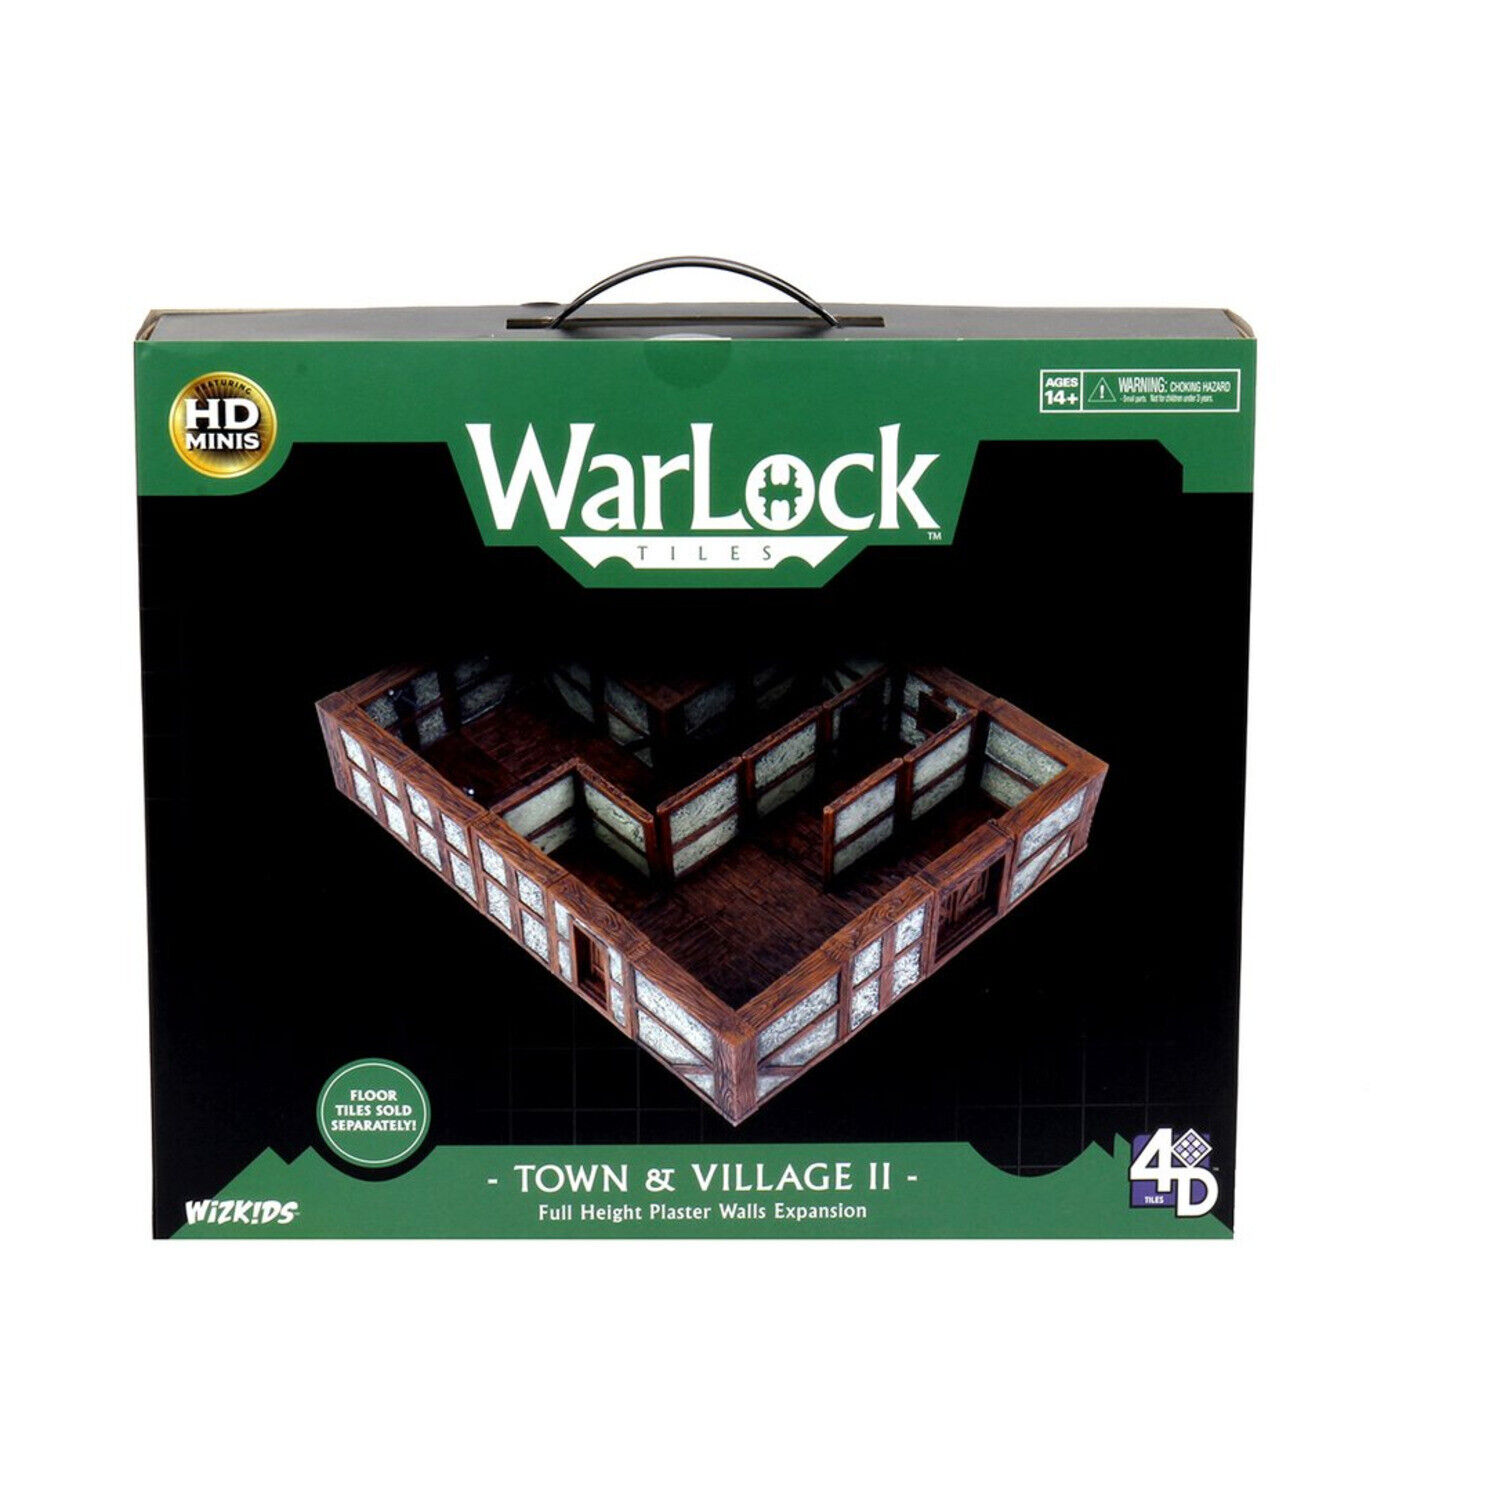 Warlock Tiles: Town & Village II Expansion- Plaster Walls